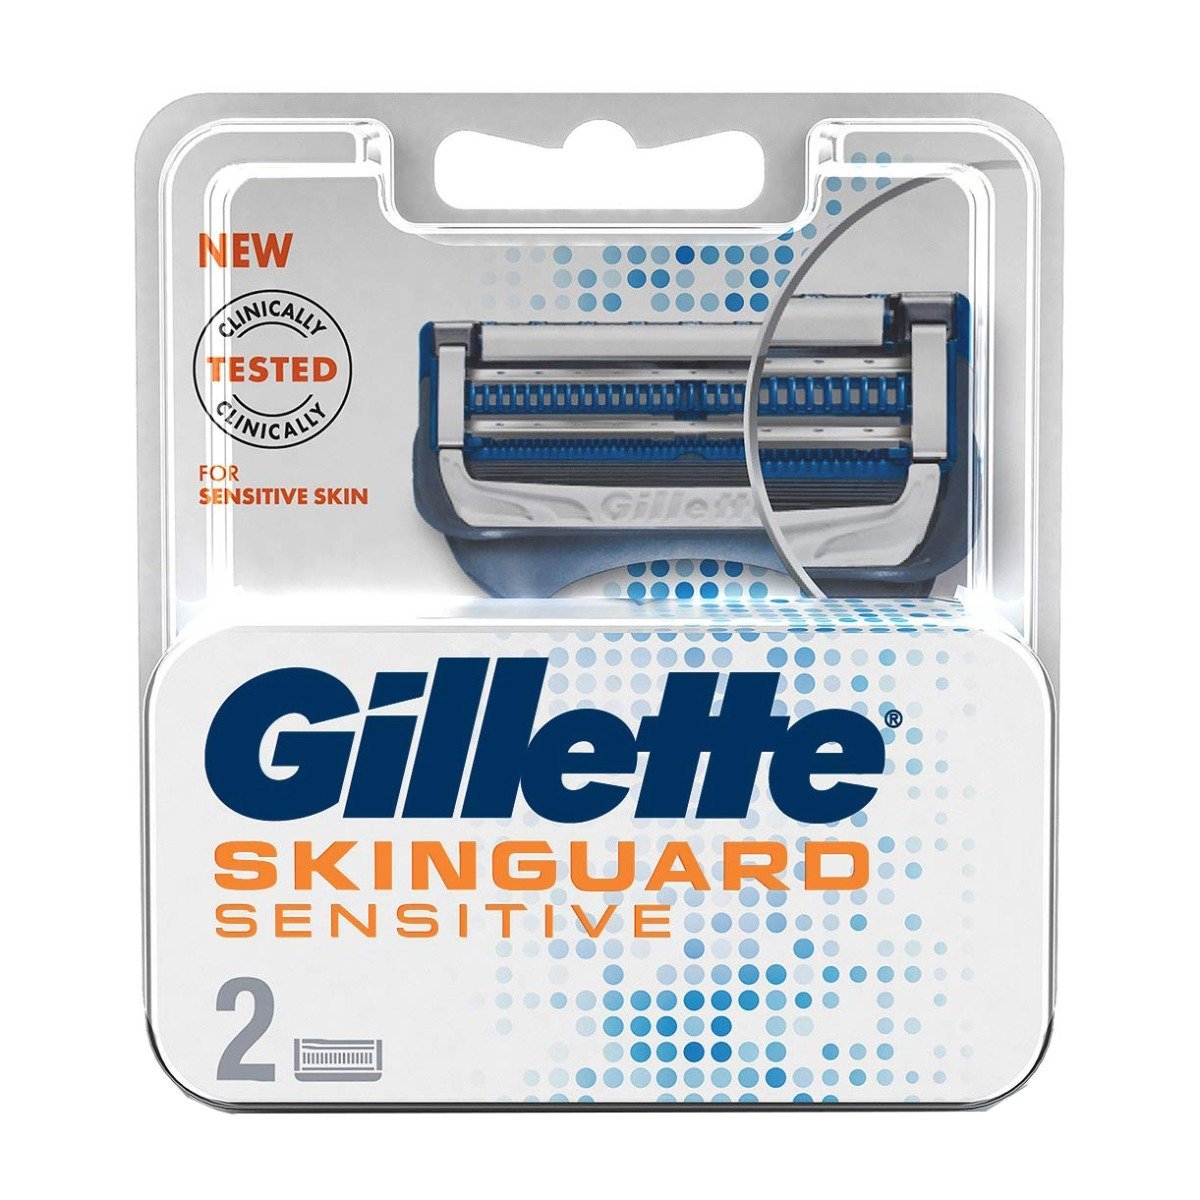 Gillette Skinguard Sensitive - 2 Blades